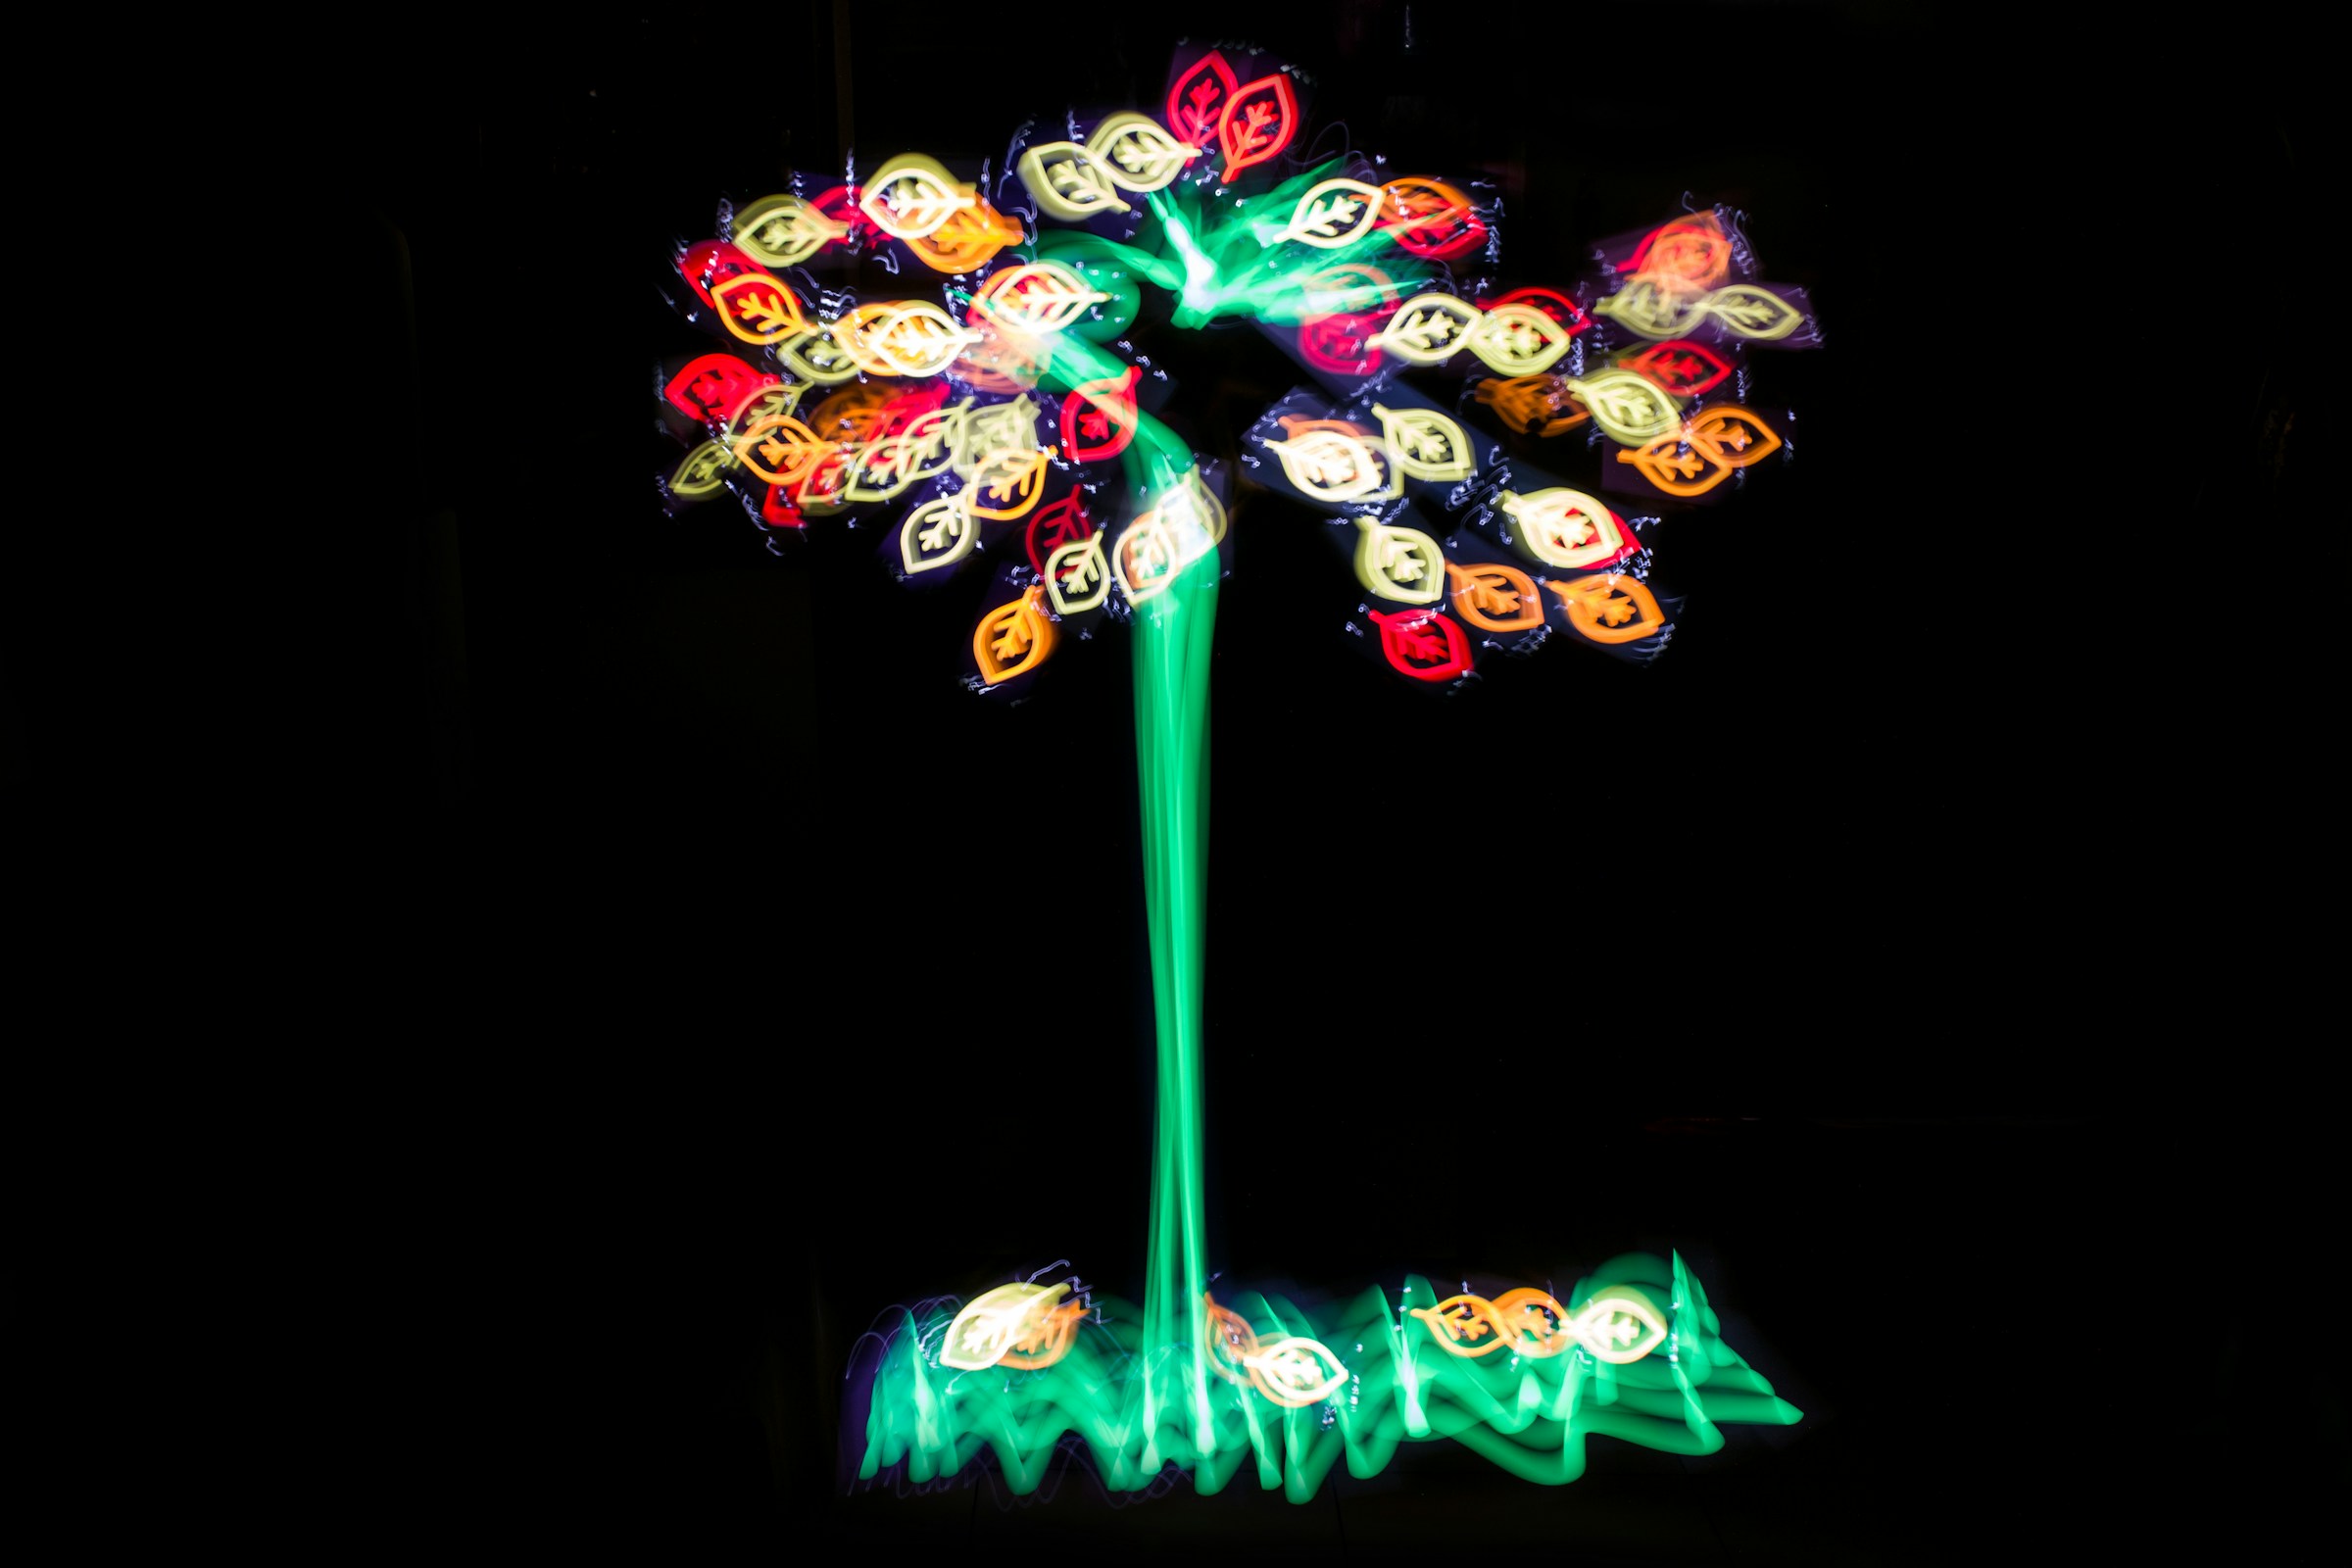 Arbres en néons, photo par Sonika Agarwal